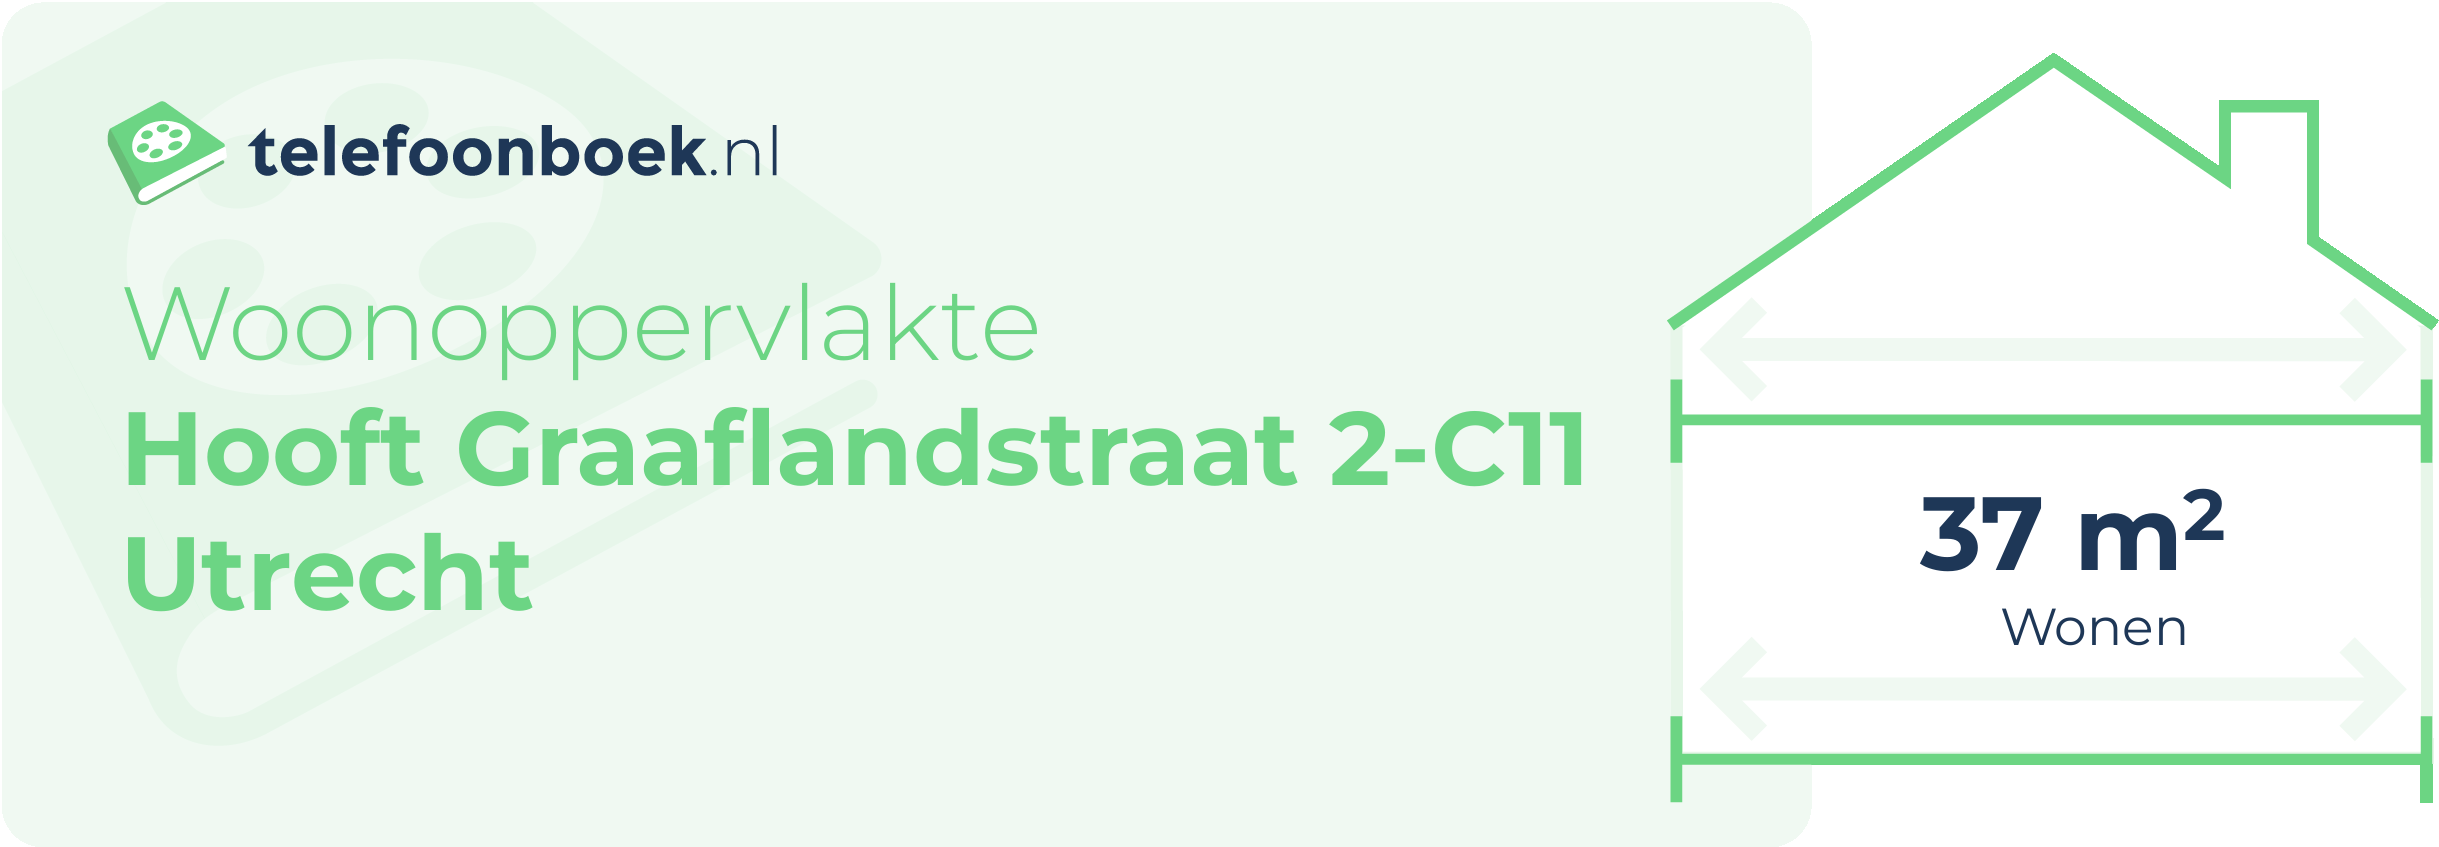 Woonoppervlakte Hooft Graaflandstraat 2-C11 Utrecht